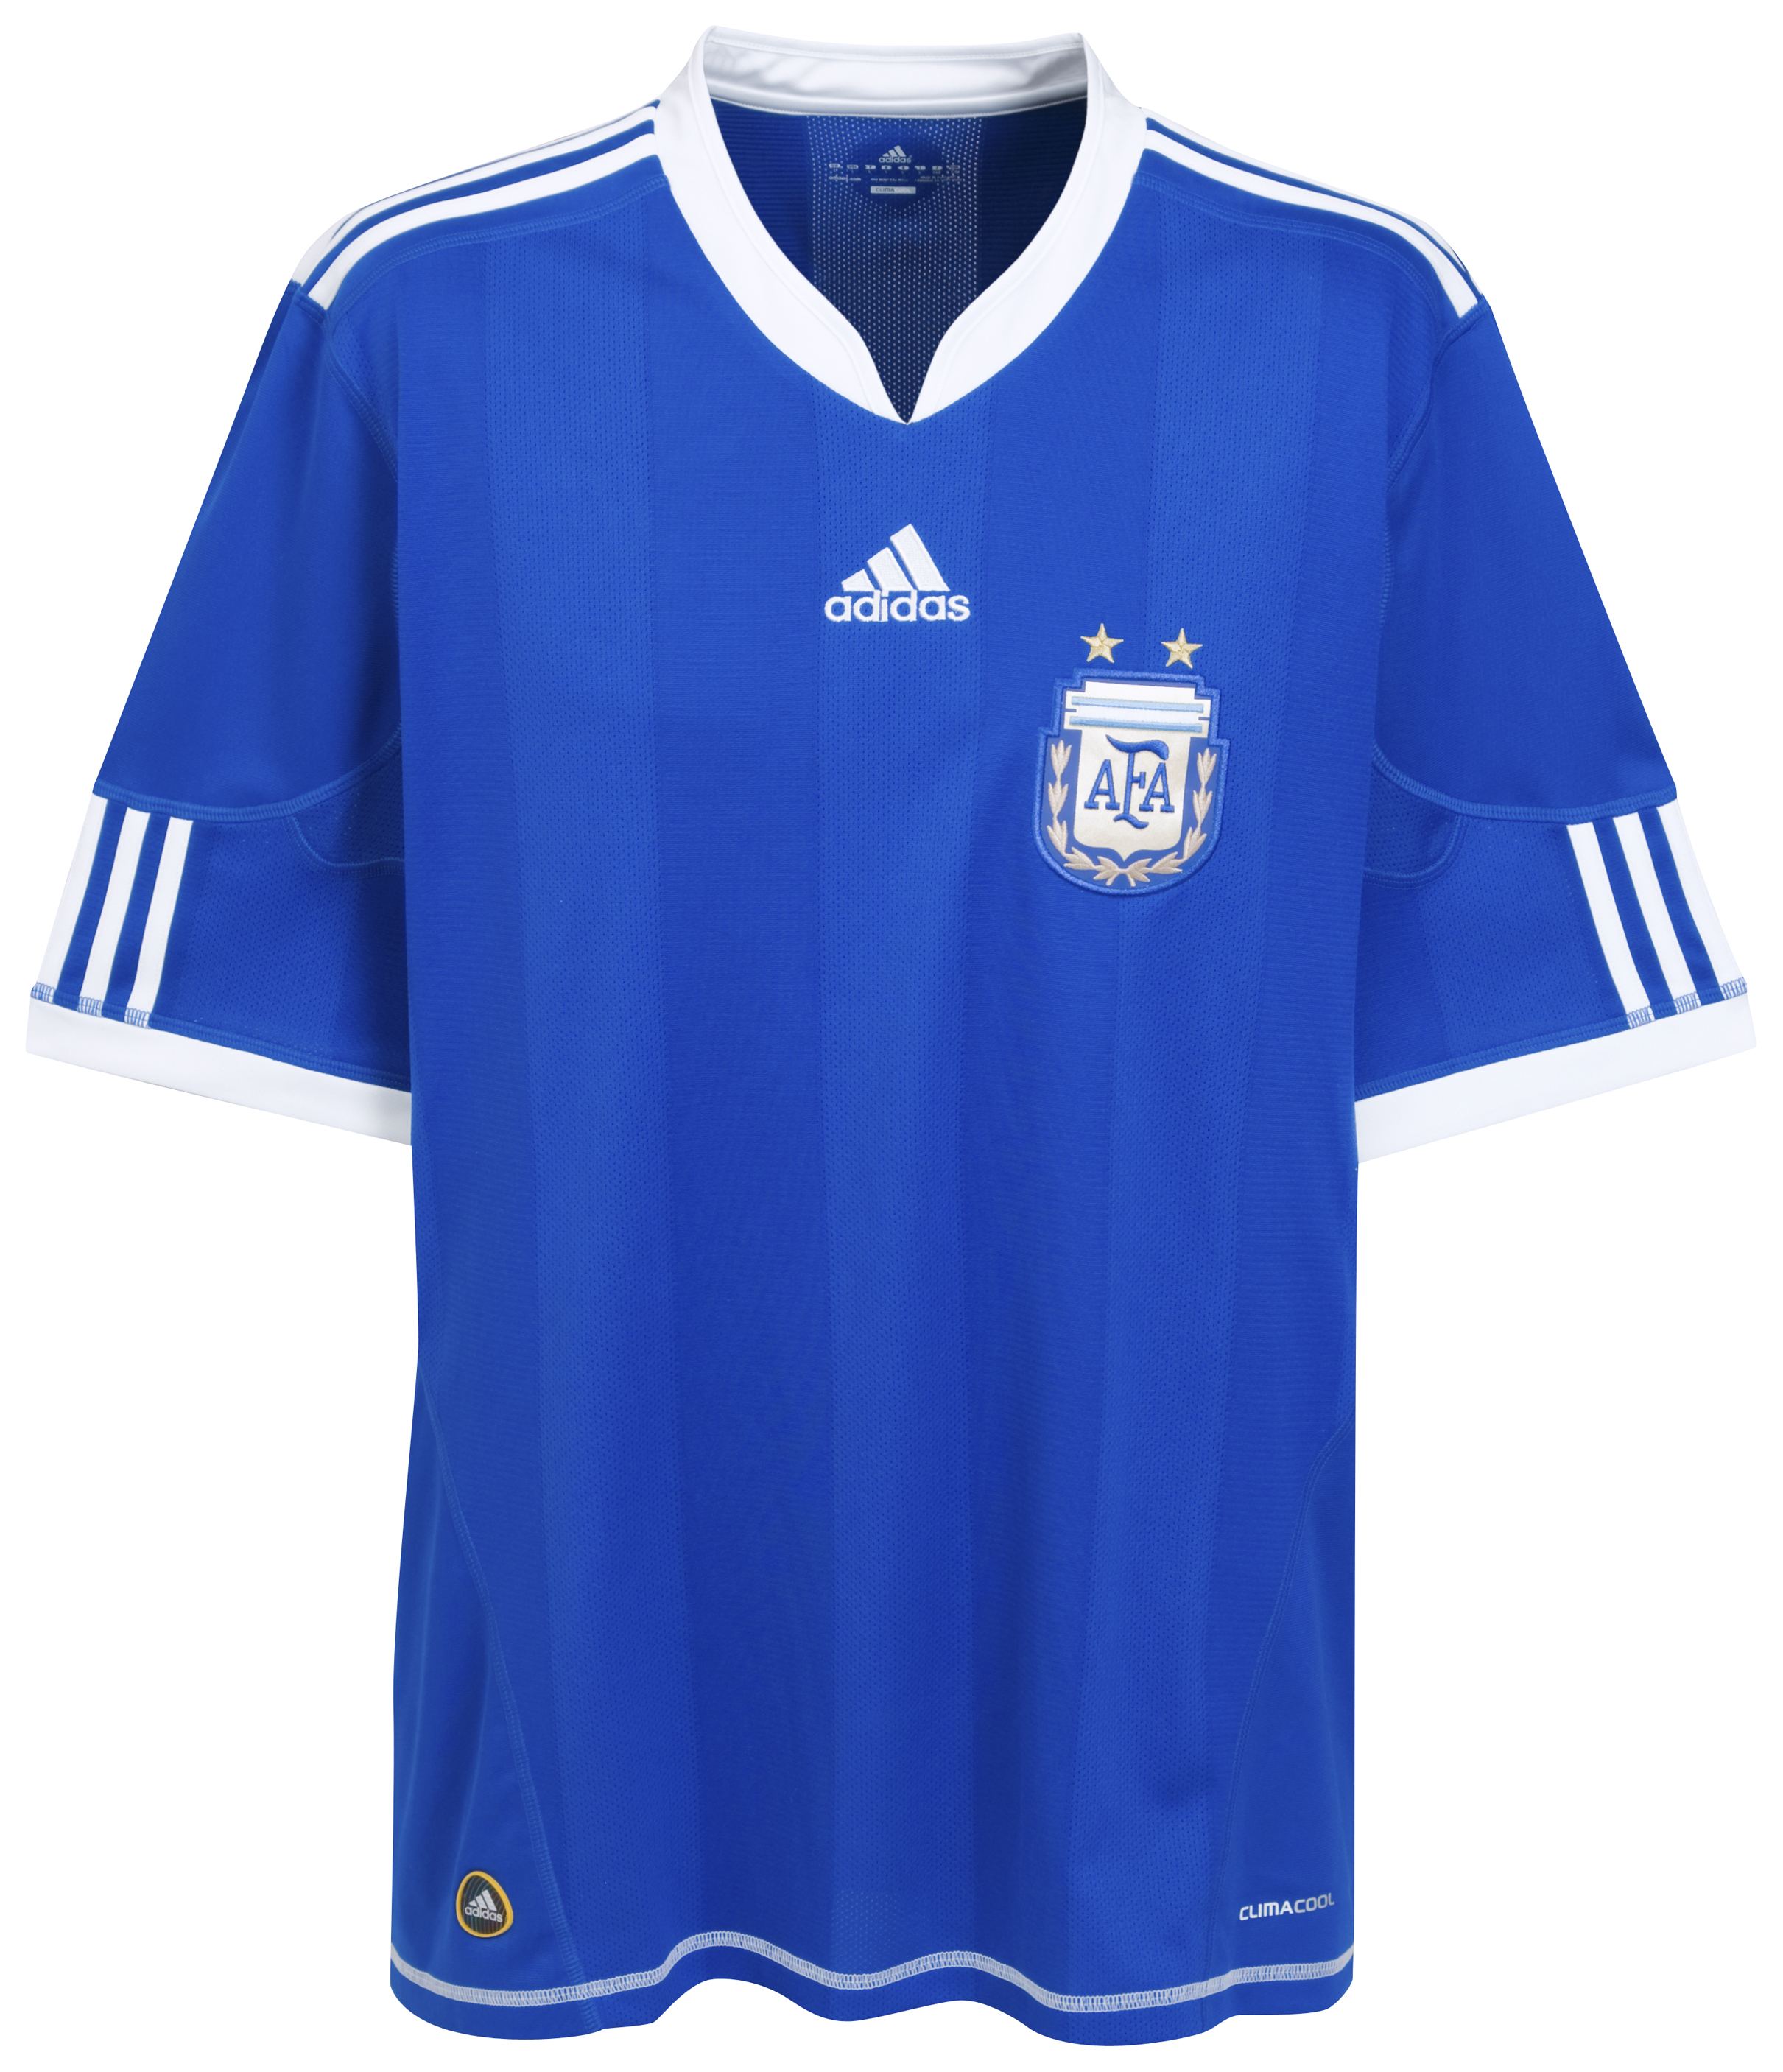 .¸-(_ (قمصان جميع المنتخبات لكأس العالم 2010) _)-,. Kb-66925